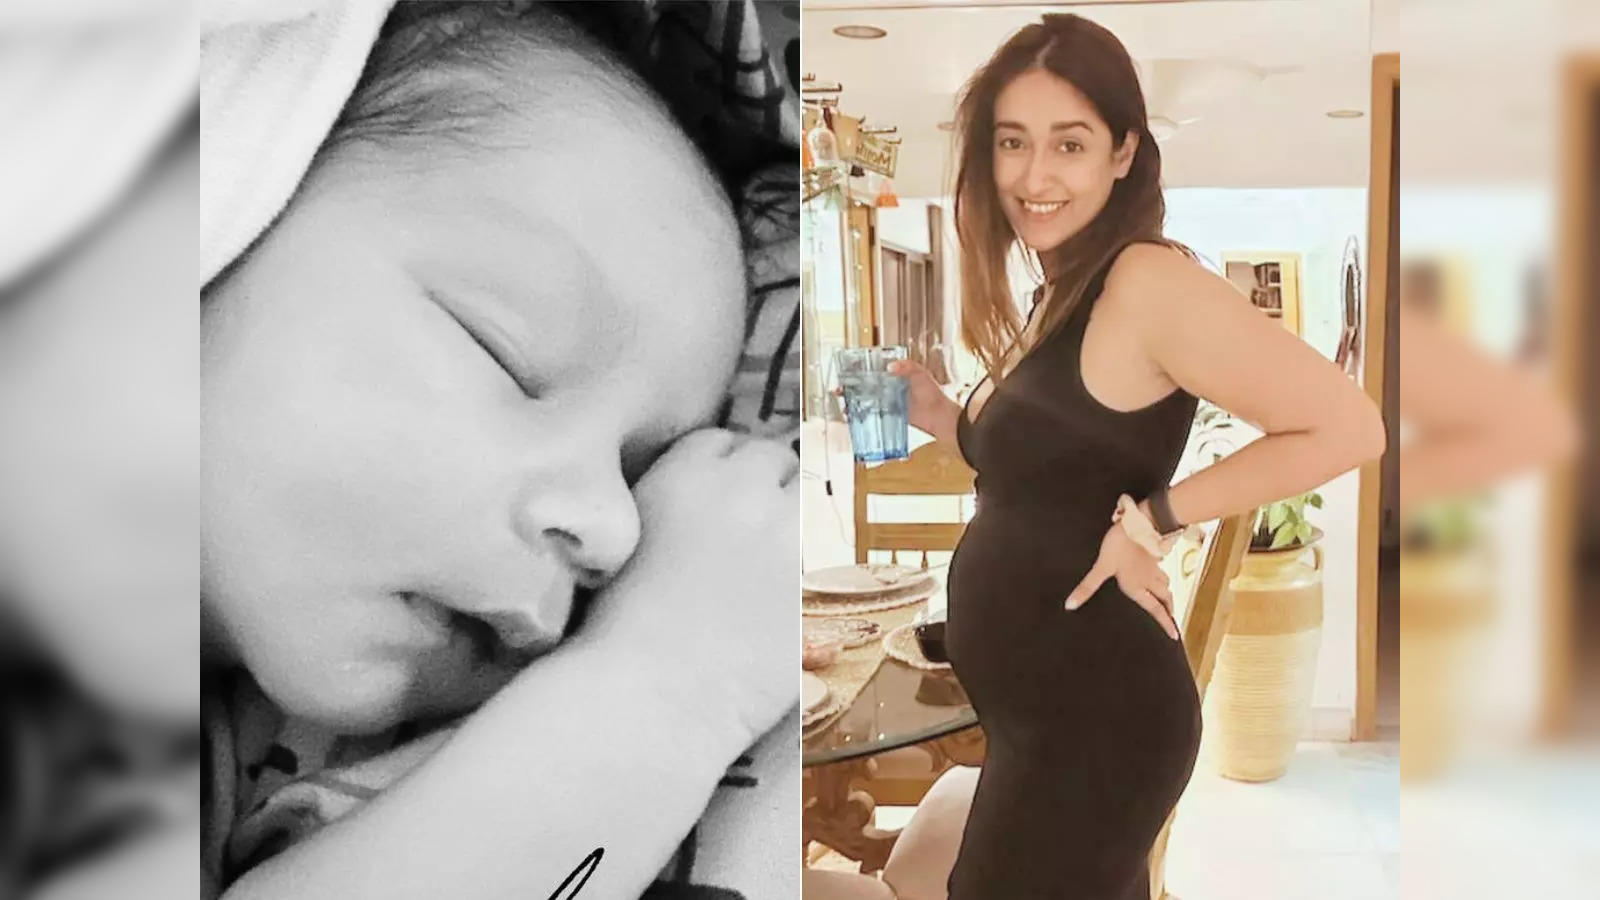 Xxx Porn Viedo Son Force Mom Aunty - ileana: Ileana D' Cruz becomes a mom! 'Barfi' star welcomes first child, a  baby boy - The Economic Times